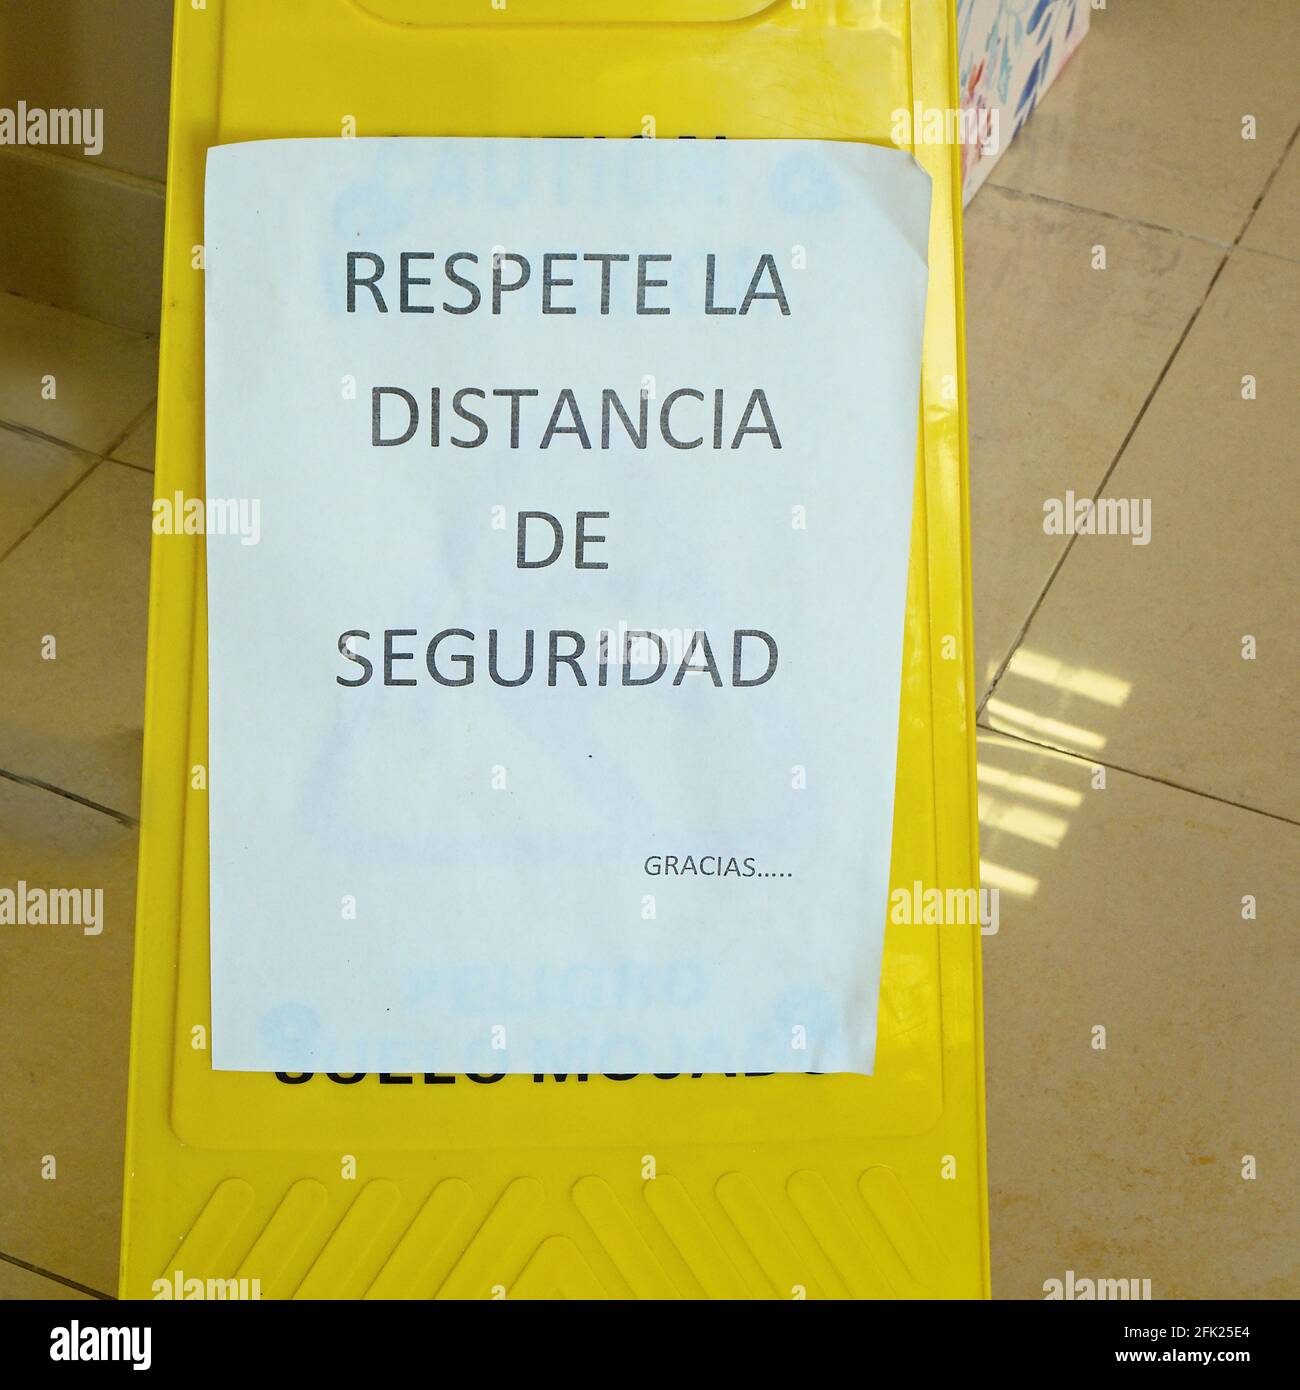 C'è un cartello di avvertimento in un negozio che recita 'Respeta la Distancia de Seguridad' in spagnolo. Rispettare la distanza di sicurezza nei tempi di Corona. Foto Stock